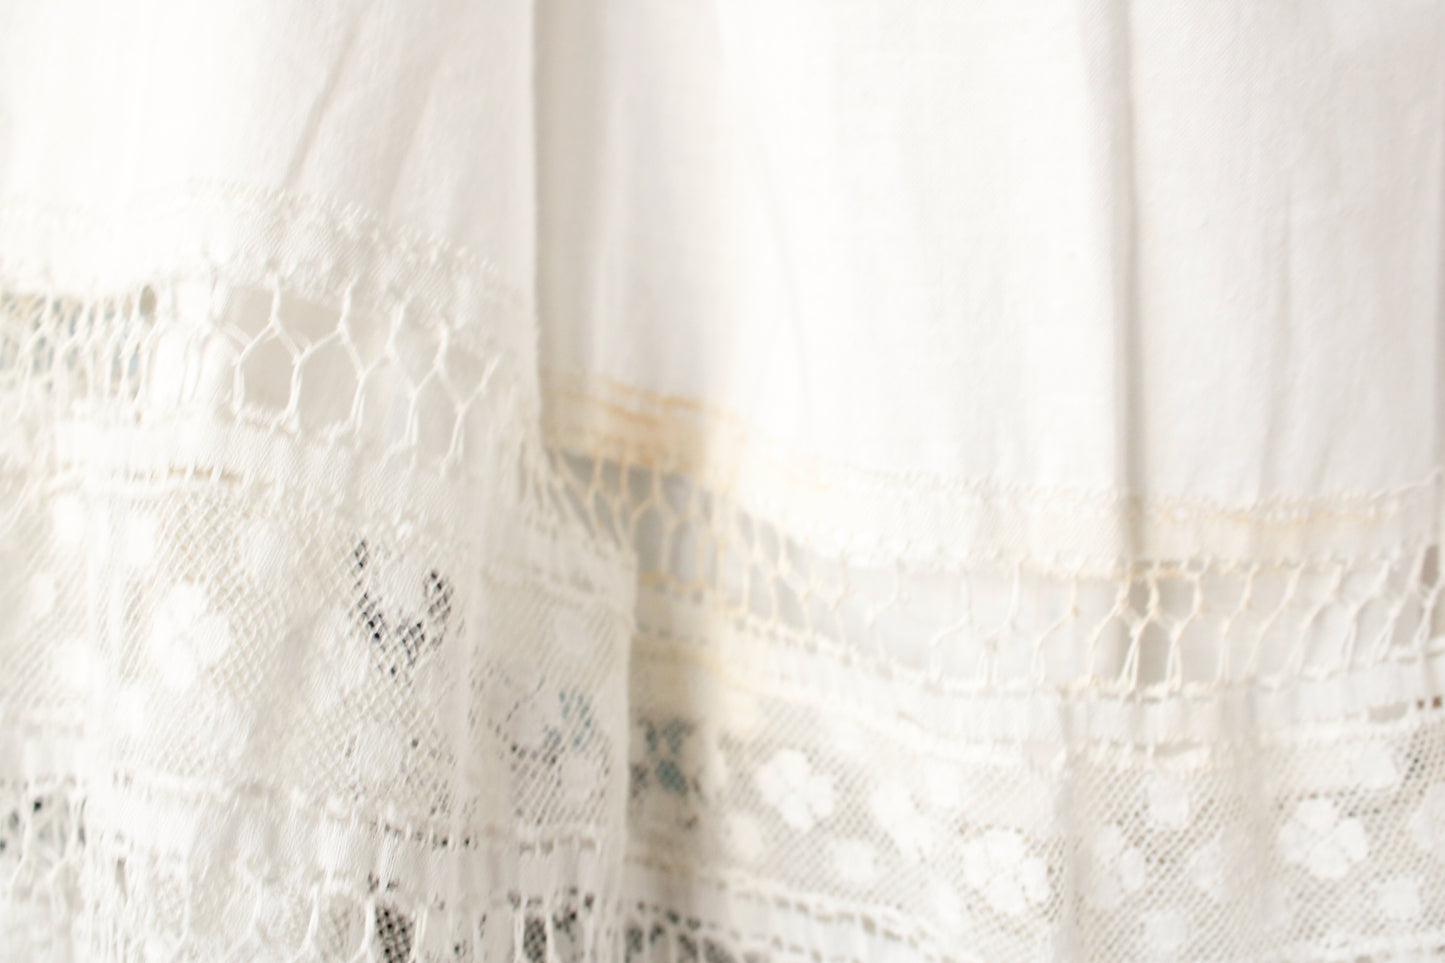 1900s Victorian Lace & Cotton Slip Skirt - M/L